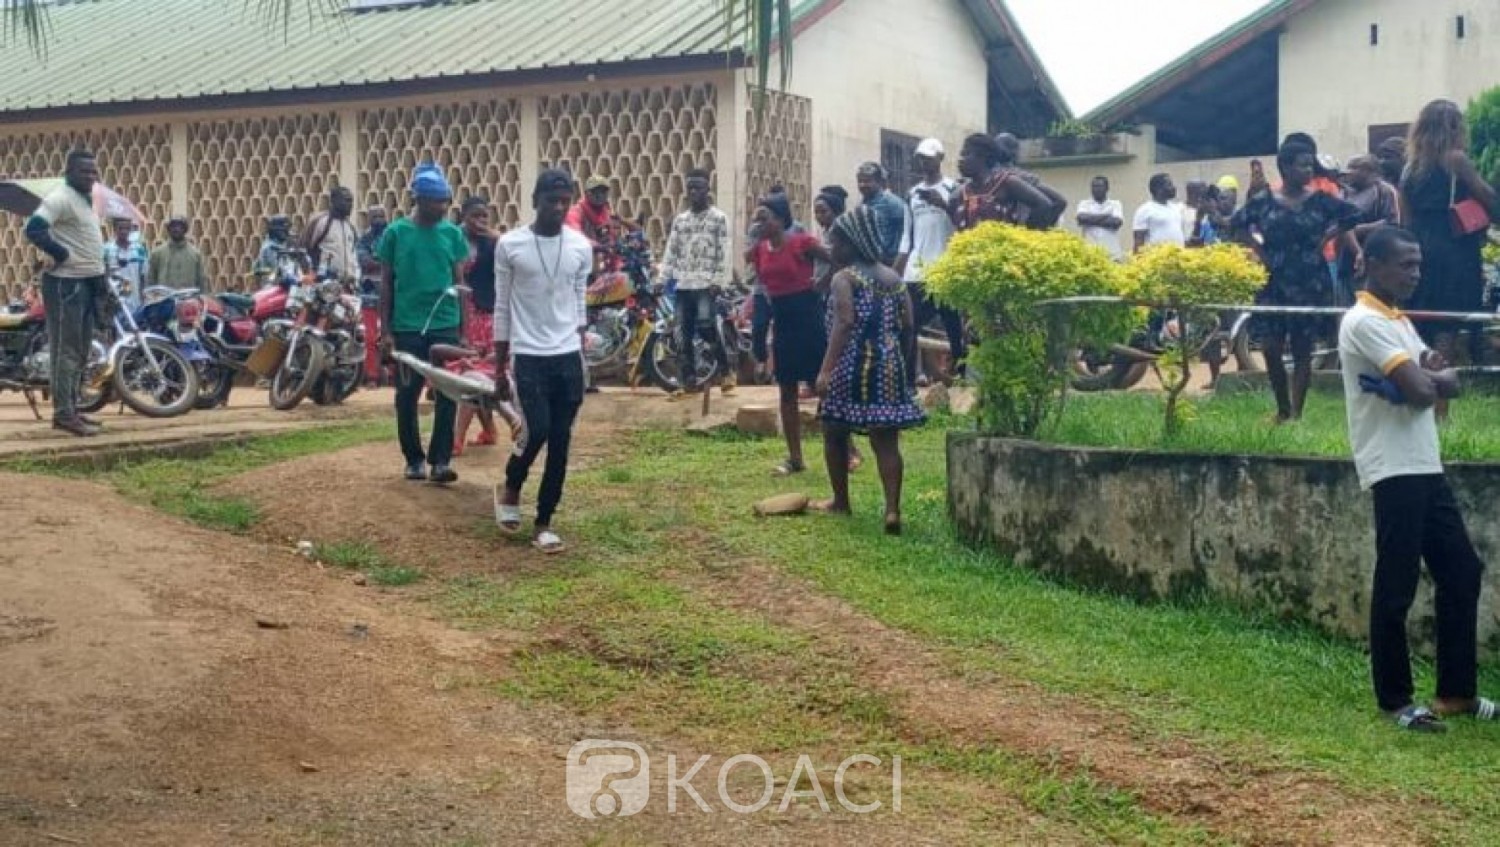 Cameroun : Des séparatistes armés attaquent une école et font un carnage, plusieurs élèves tués